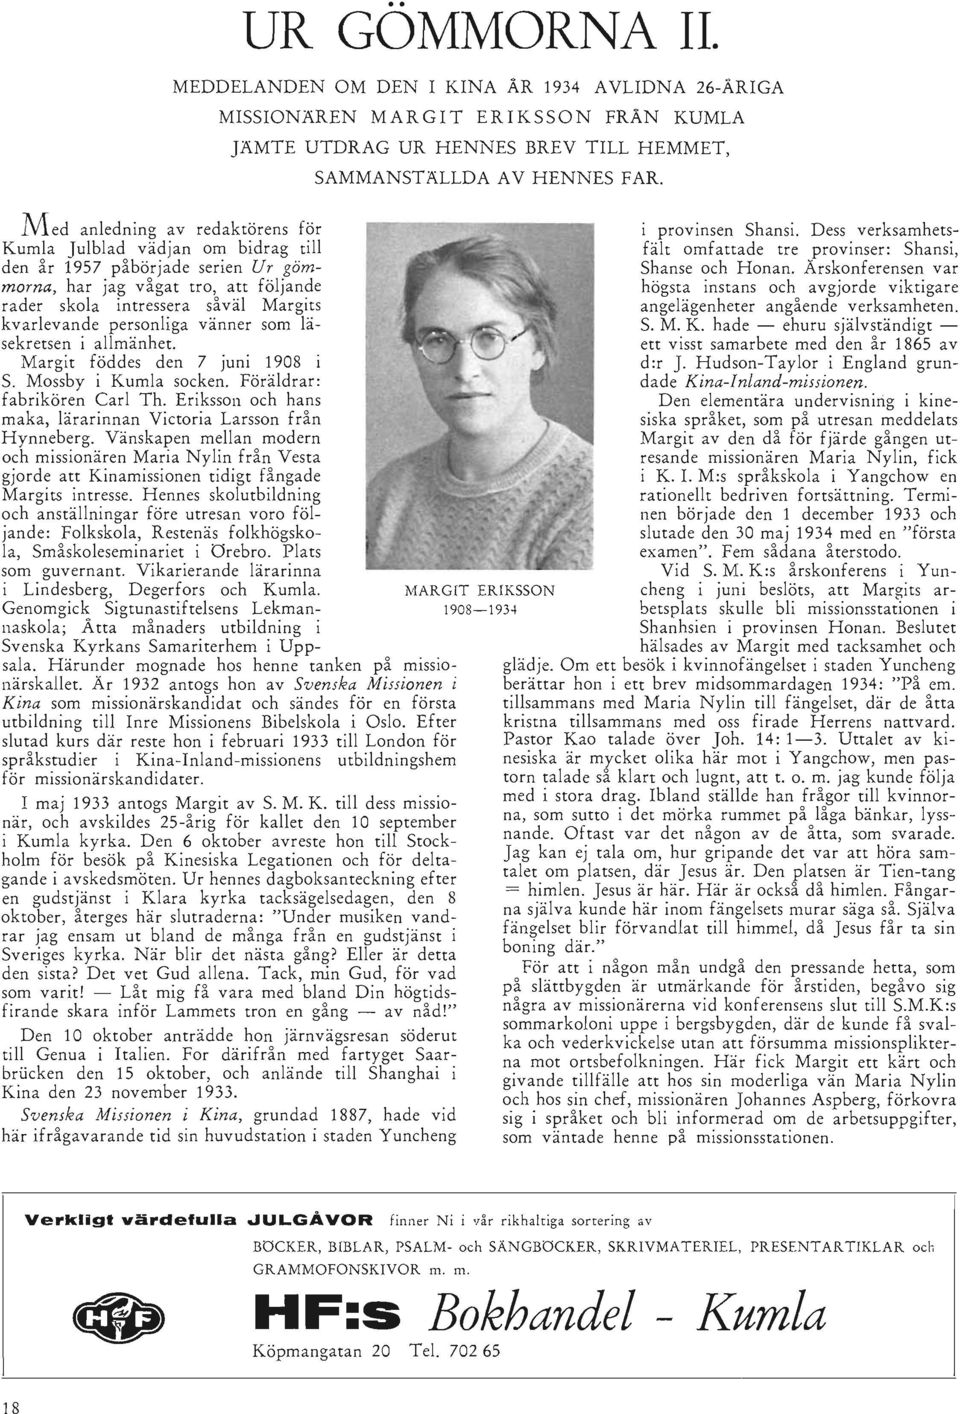 gömmorna, har jag vågat tro, att följande rader skola intressera såväl Margits kvarlevande personliga vänner som läsekretsen i allmänhet. Margit föddes den 7 juni 1908 i S. Mossby i Kumla socken.